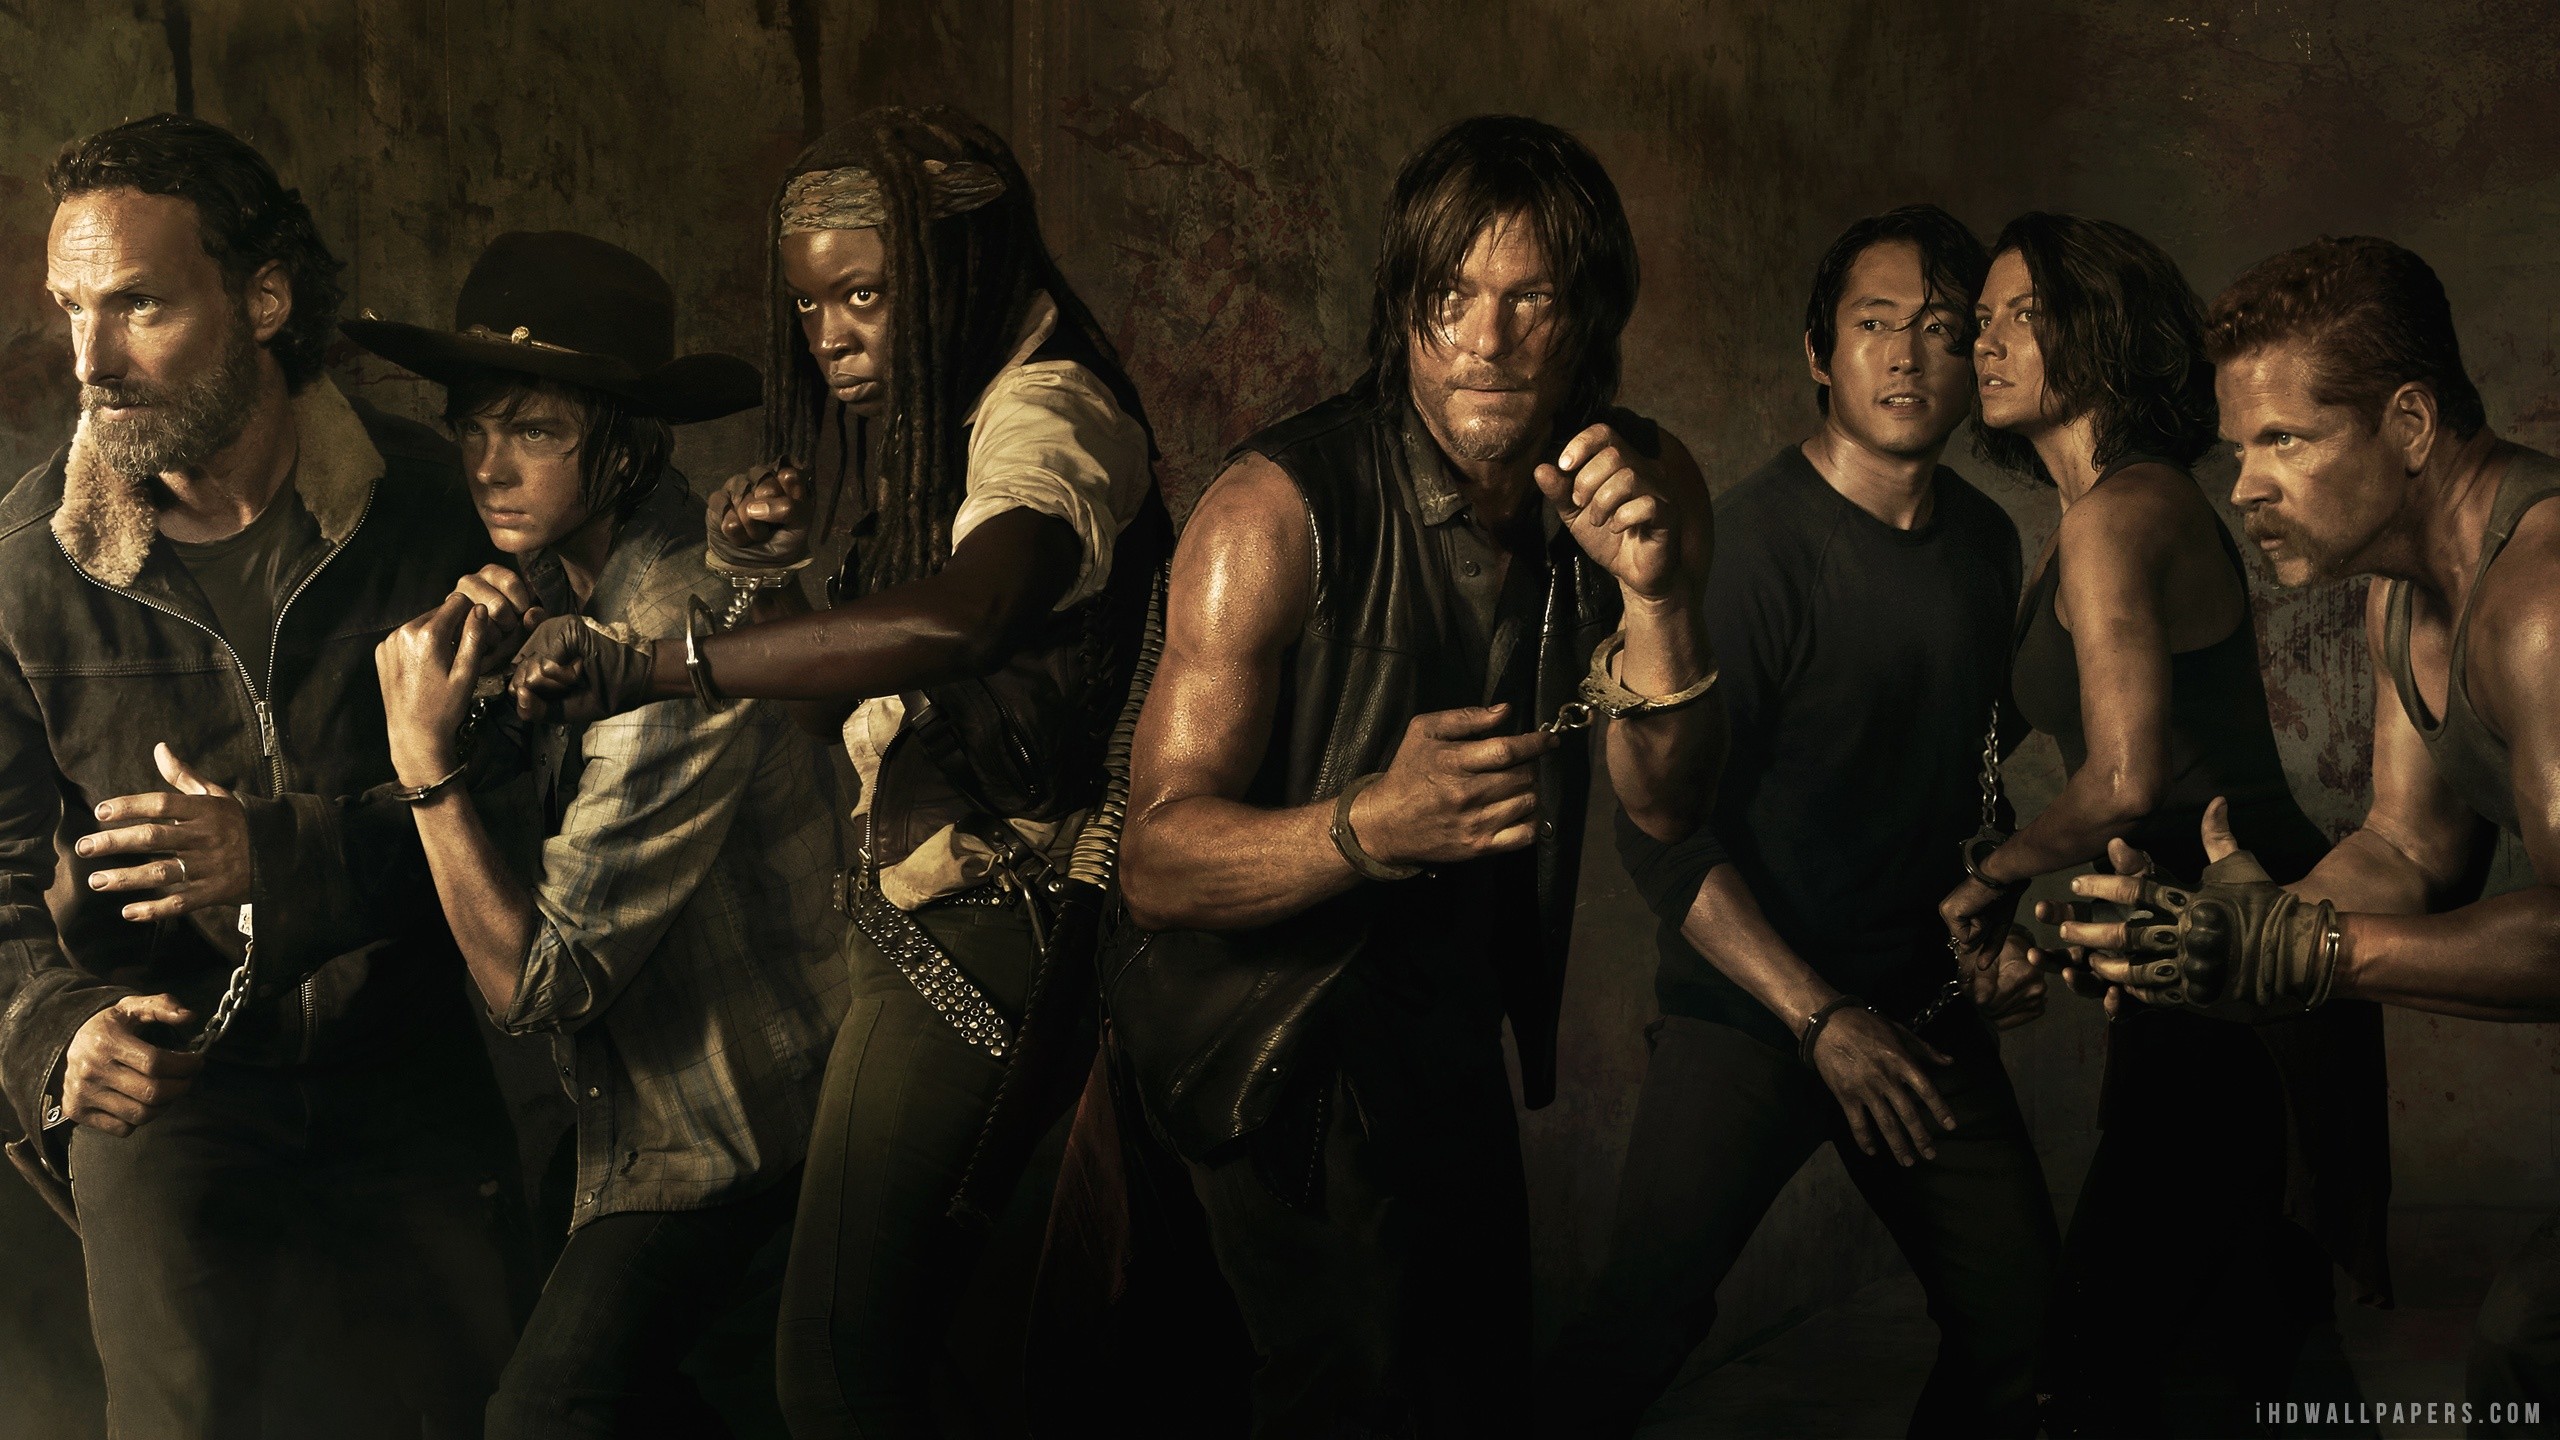 2560x1440 The Walking Dead Season 4 wallpapers (44 Wallpapers)